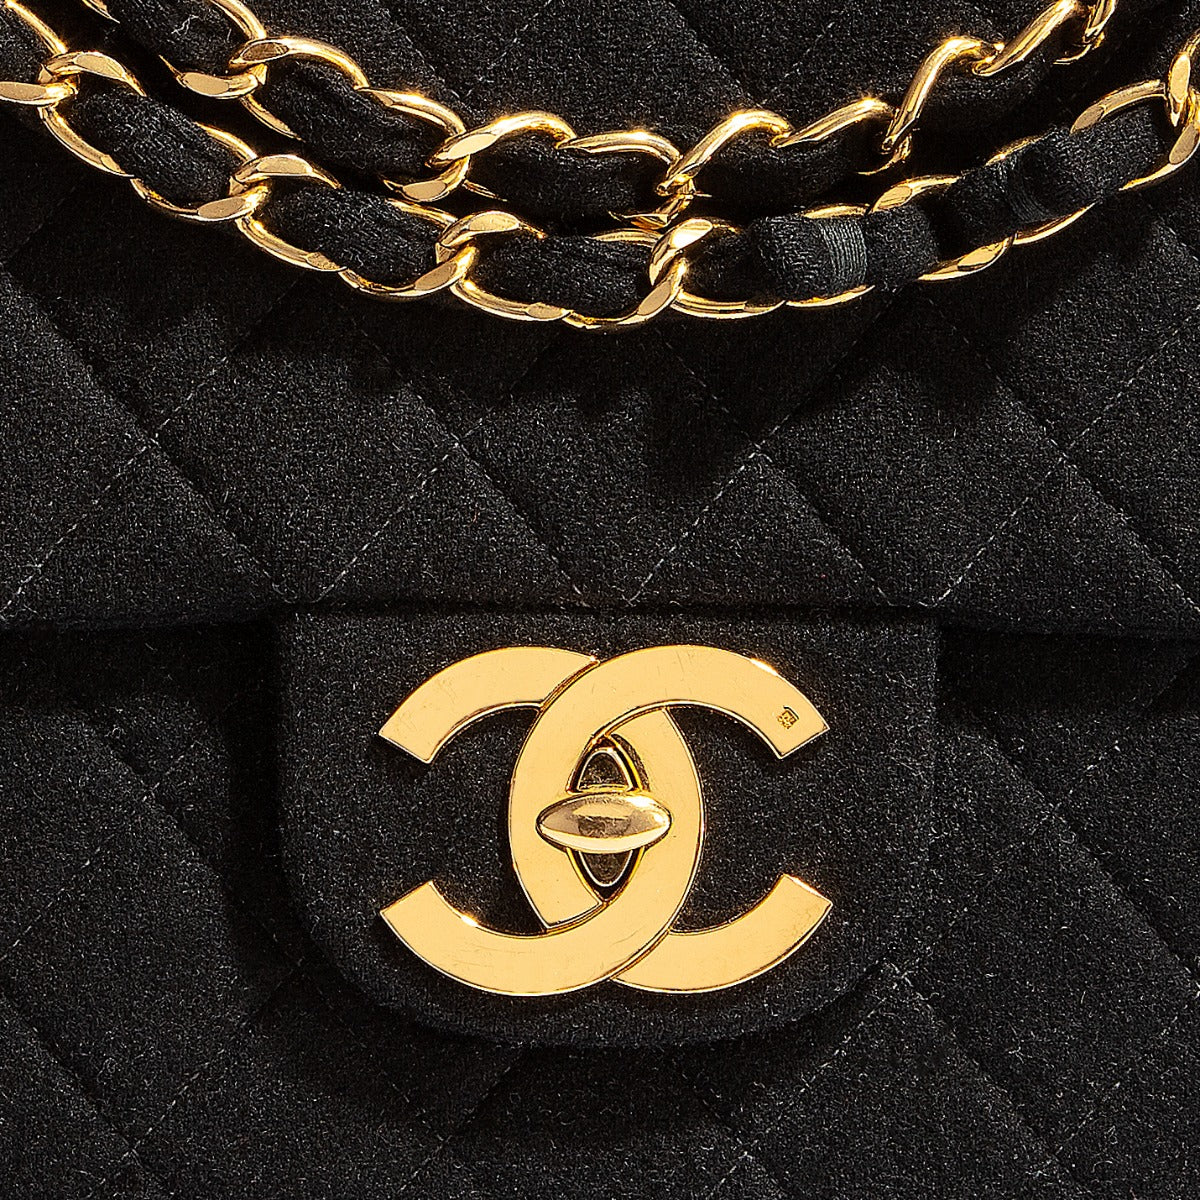 Chanel Maxi Flap Bag 